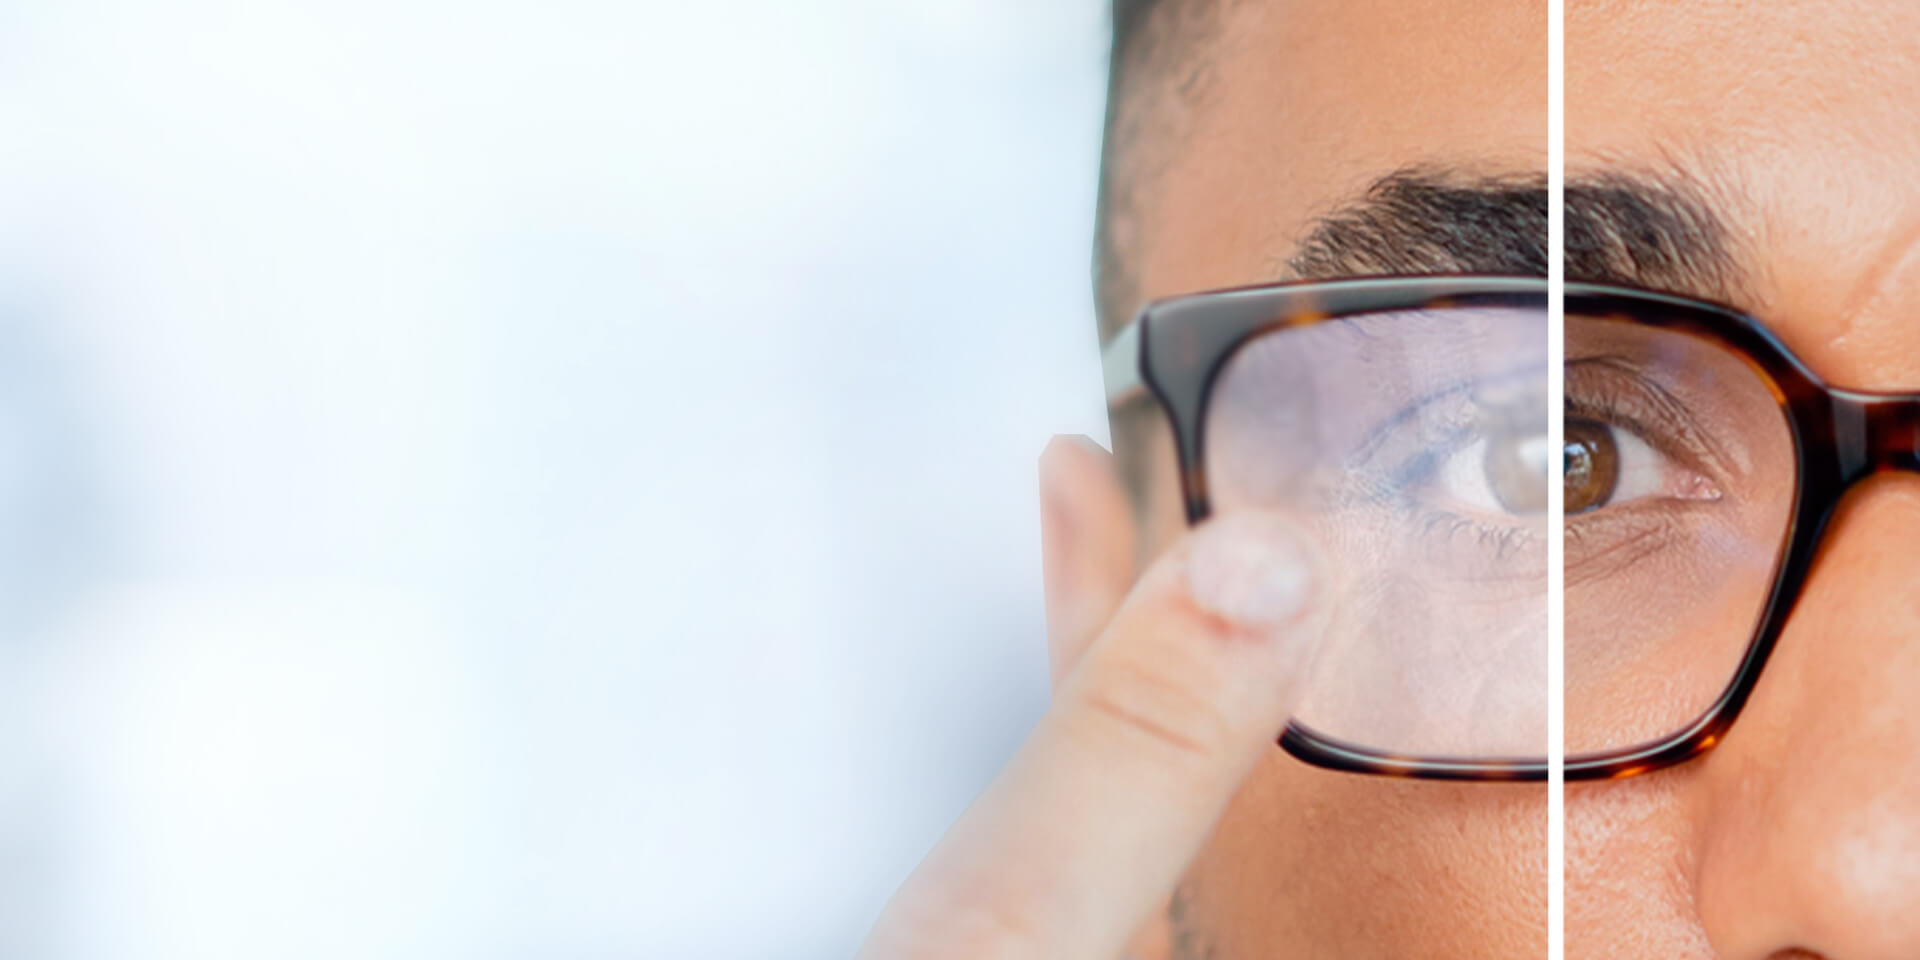 Допоможіть клієнтам підтримувати чистоту окулярів та запобігти запотіванню лінз.